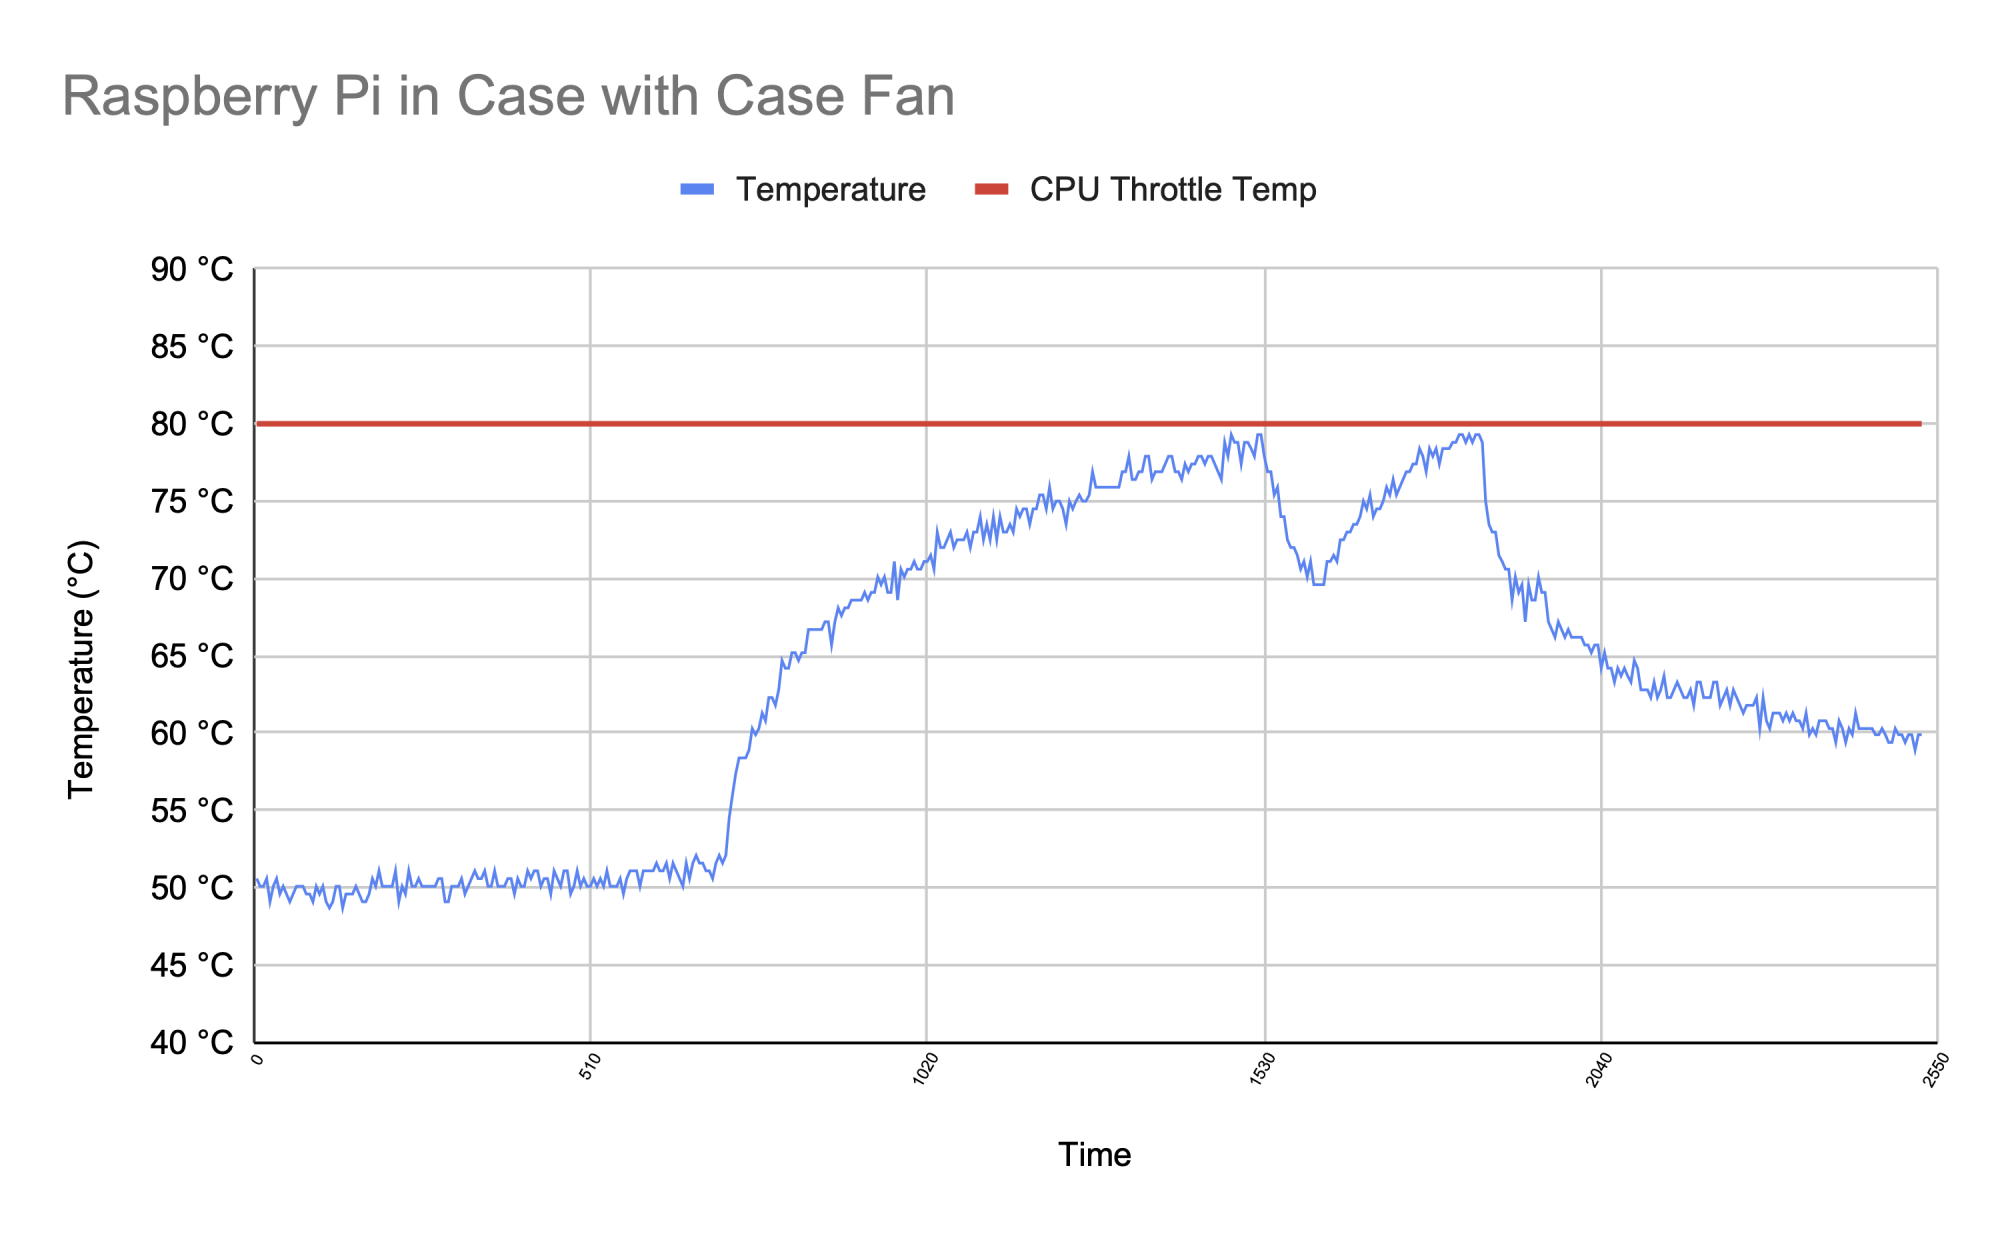 Raspberry Pi temperature graph - Case Fan